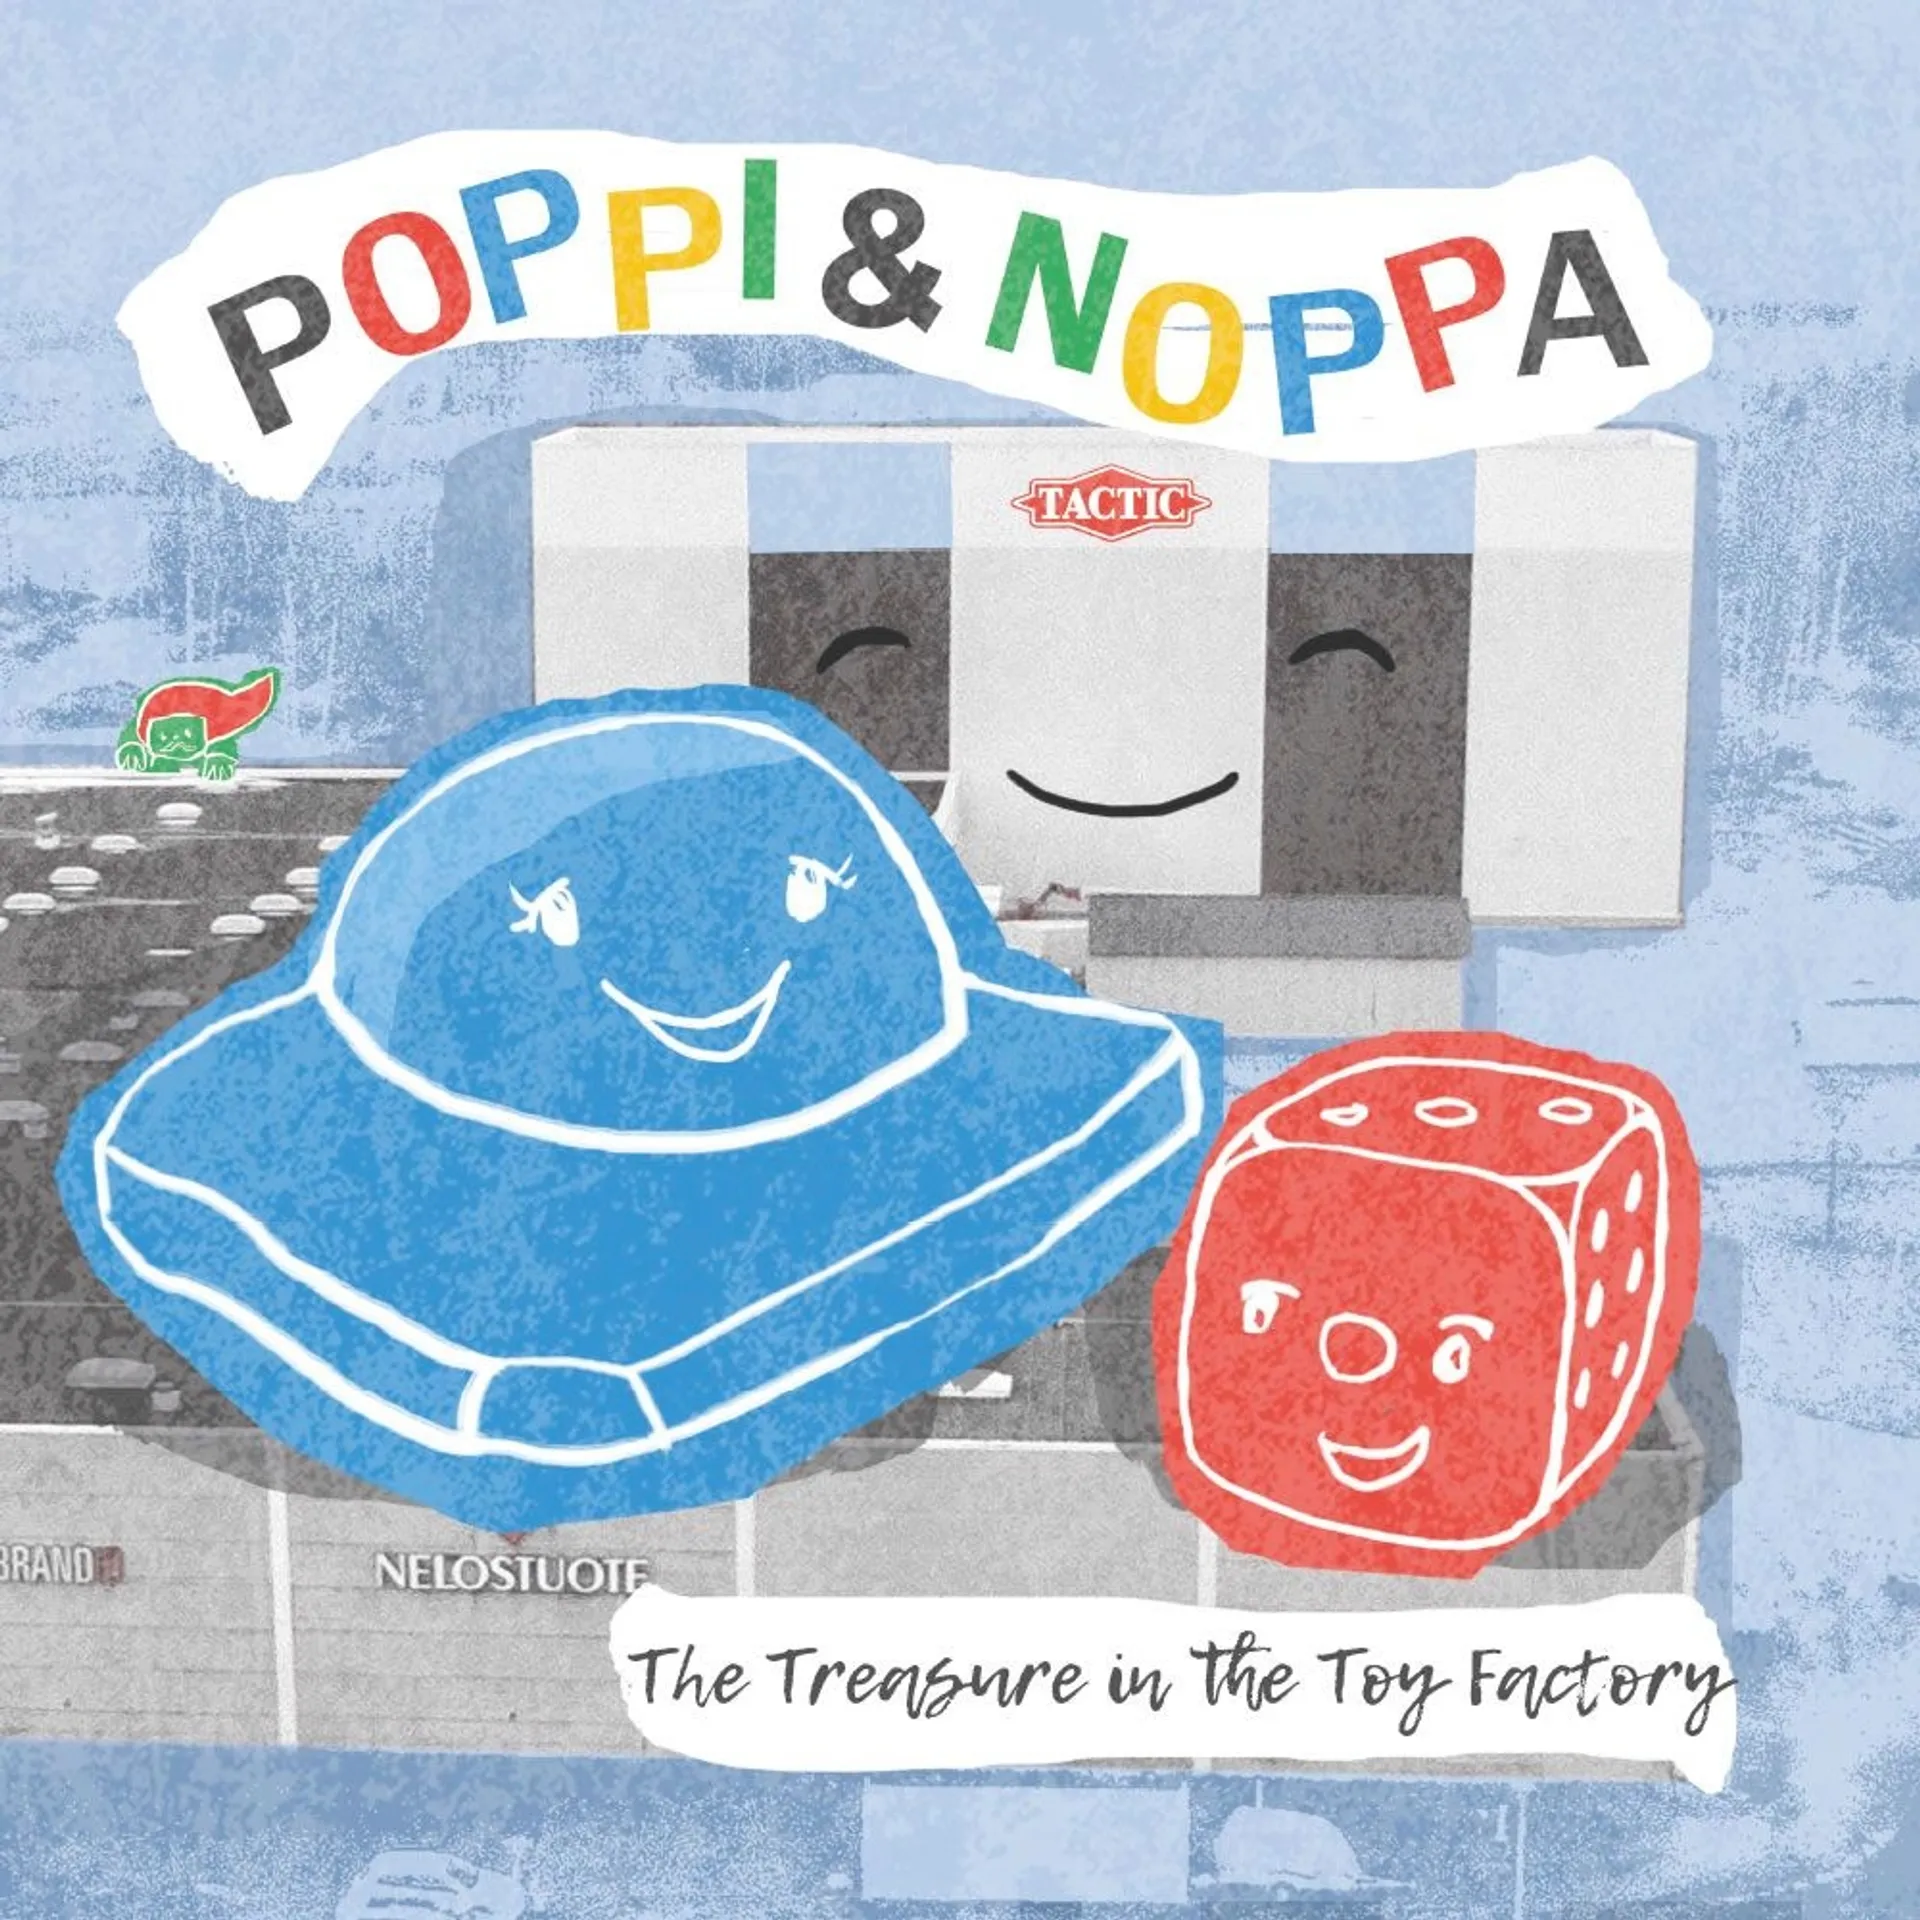 Heljakka, Poppi & Noppa, The Treasure in the Toy Factory